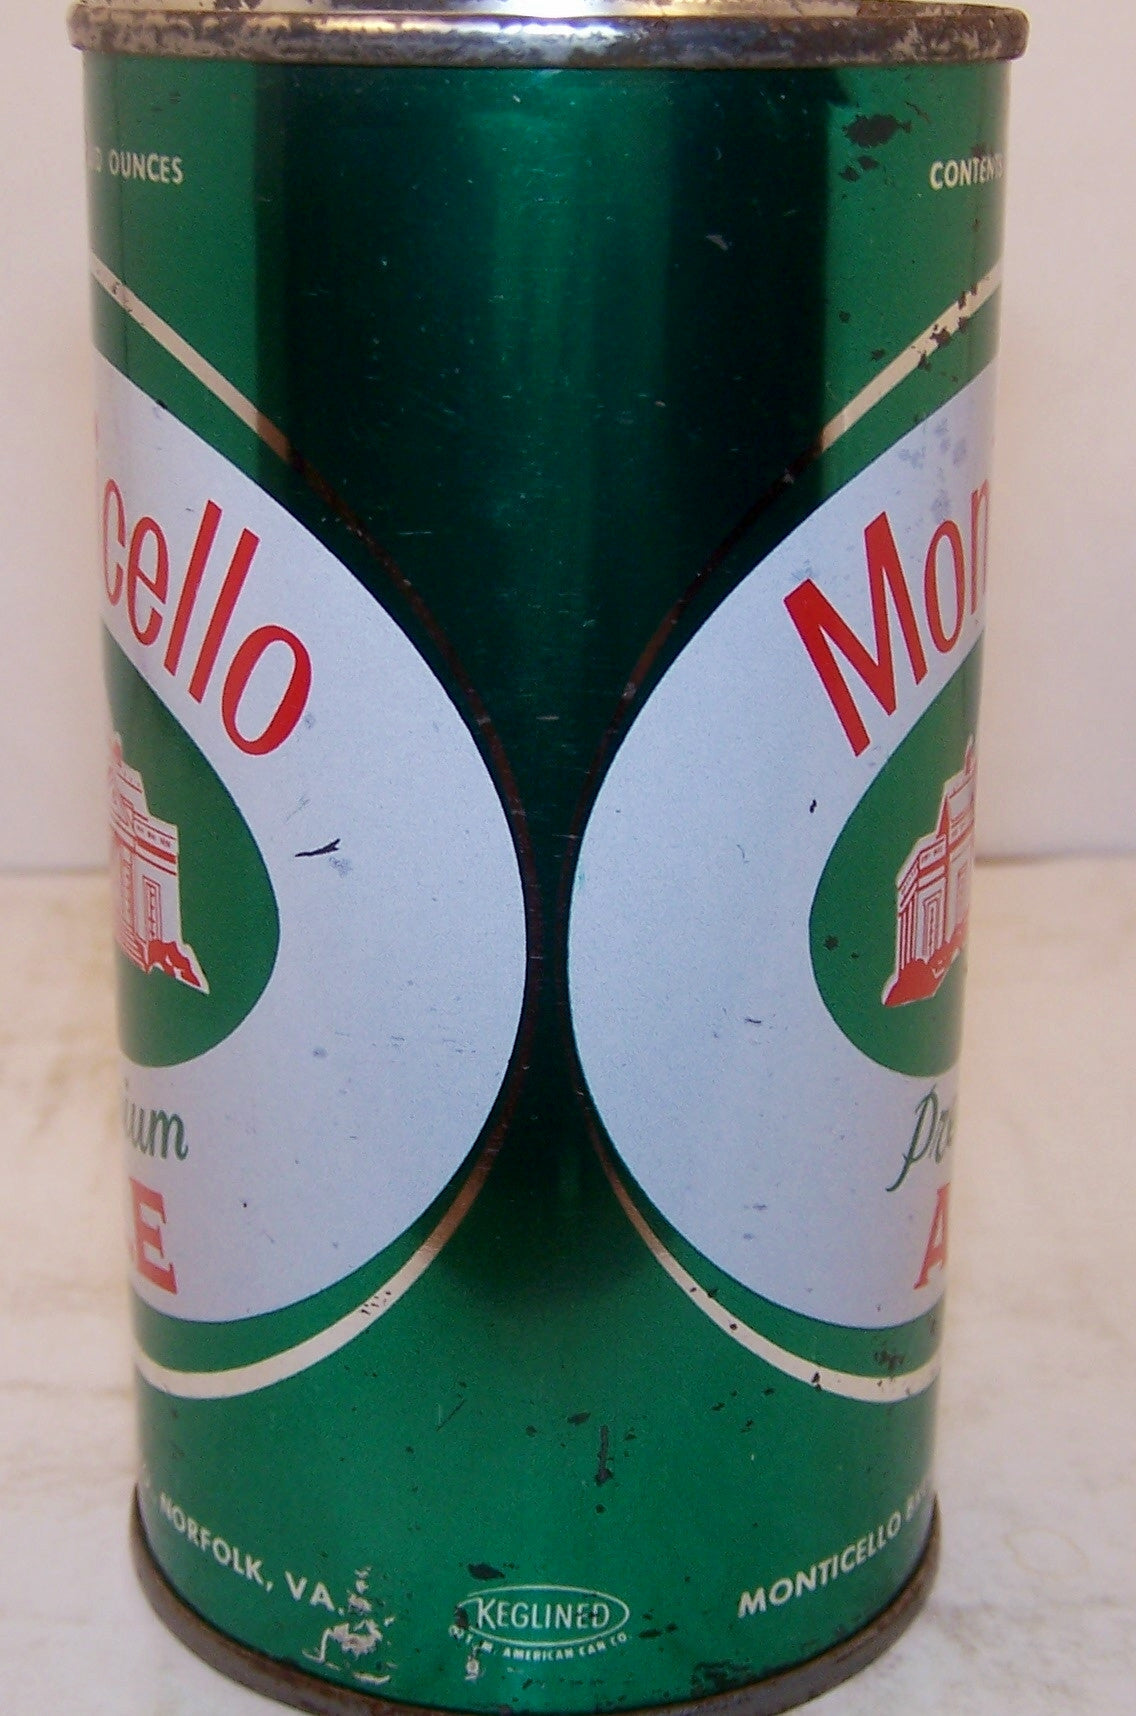 Monticello Premium Ale, USBC II 95-4 Grade 1/1- Sold on 4/12/15